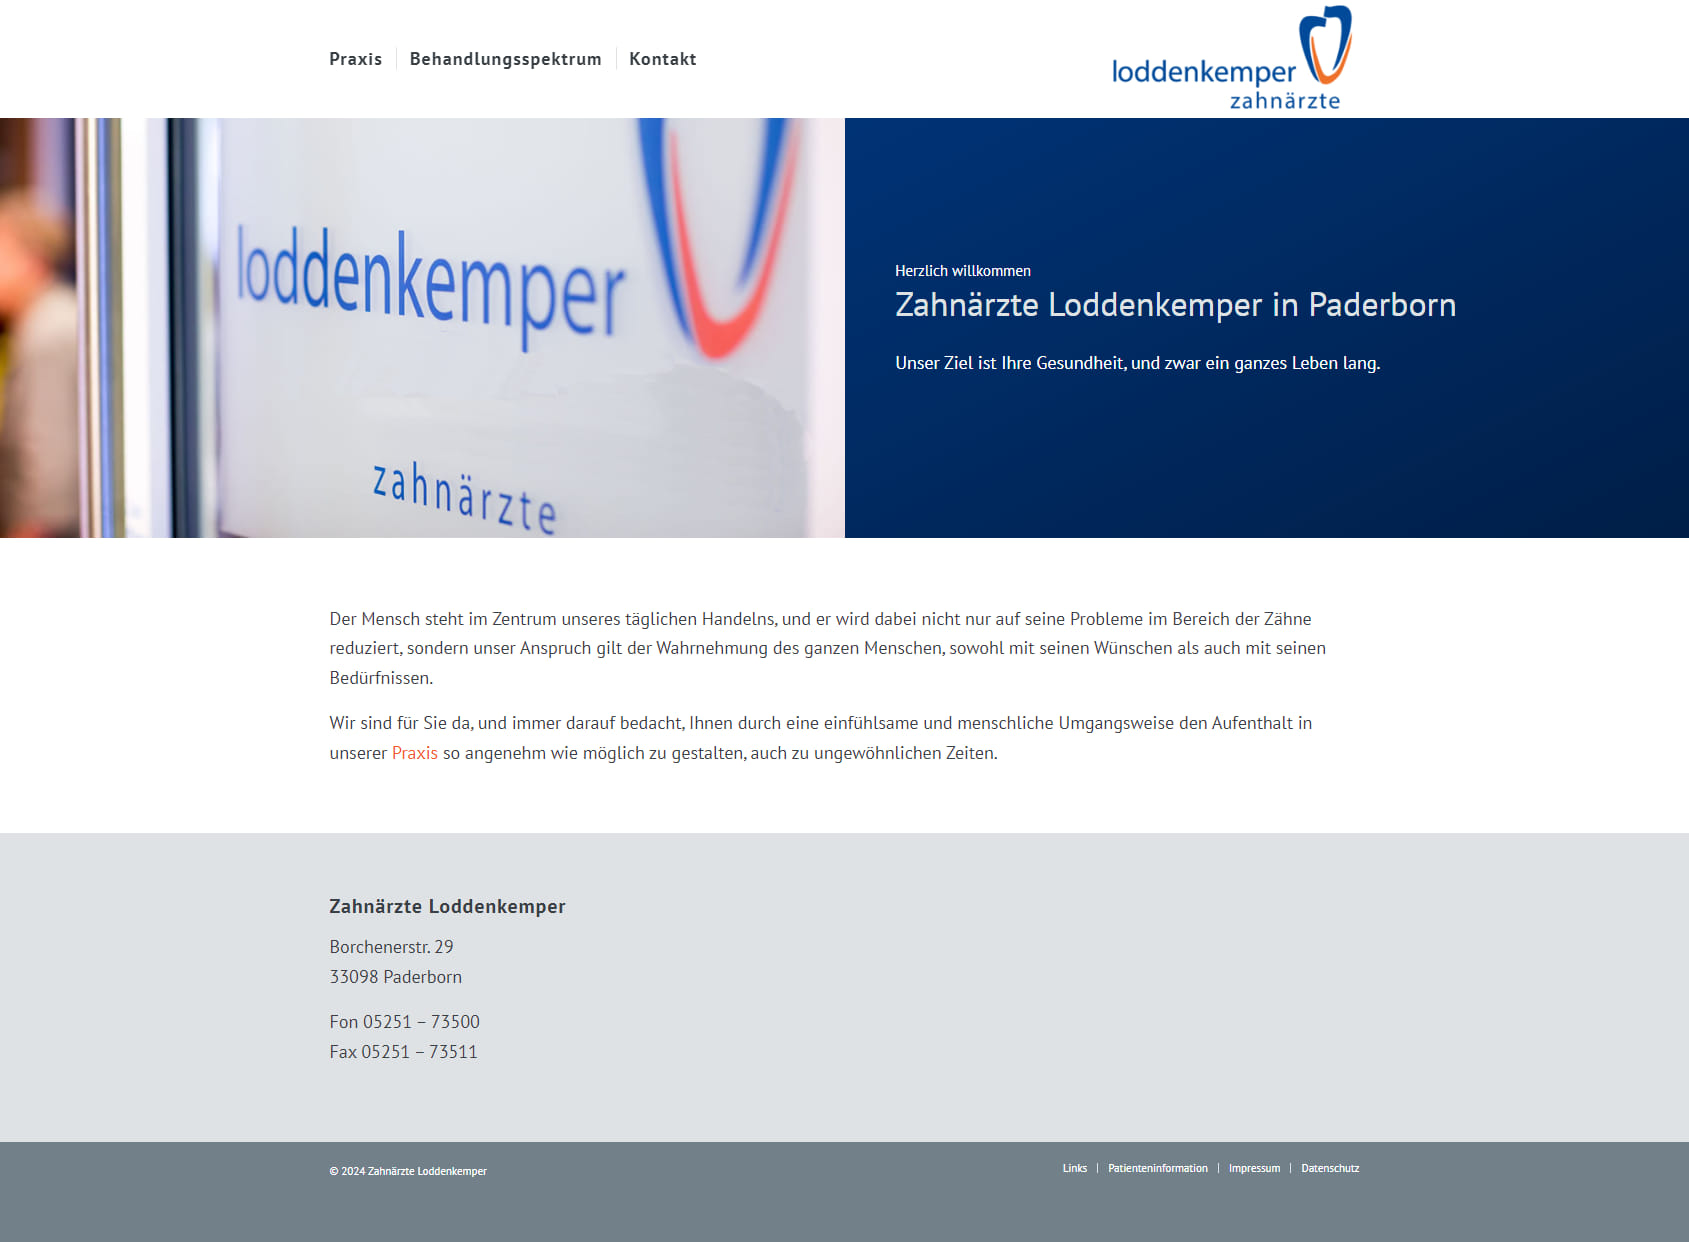 Dental practice Loddenkemper + Levermann